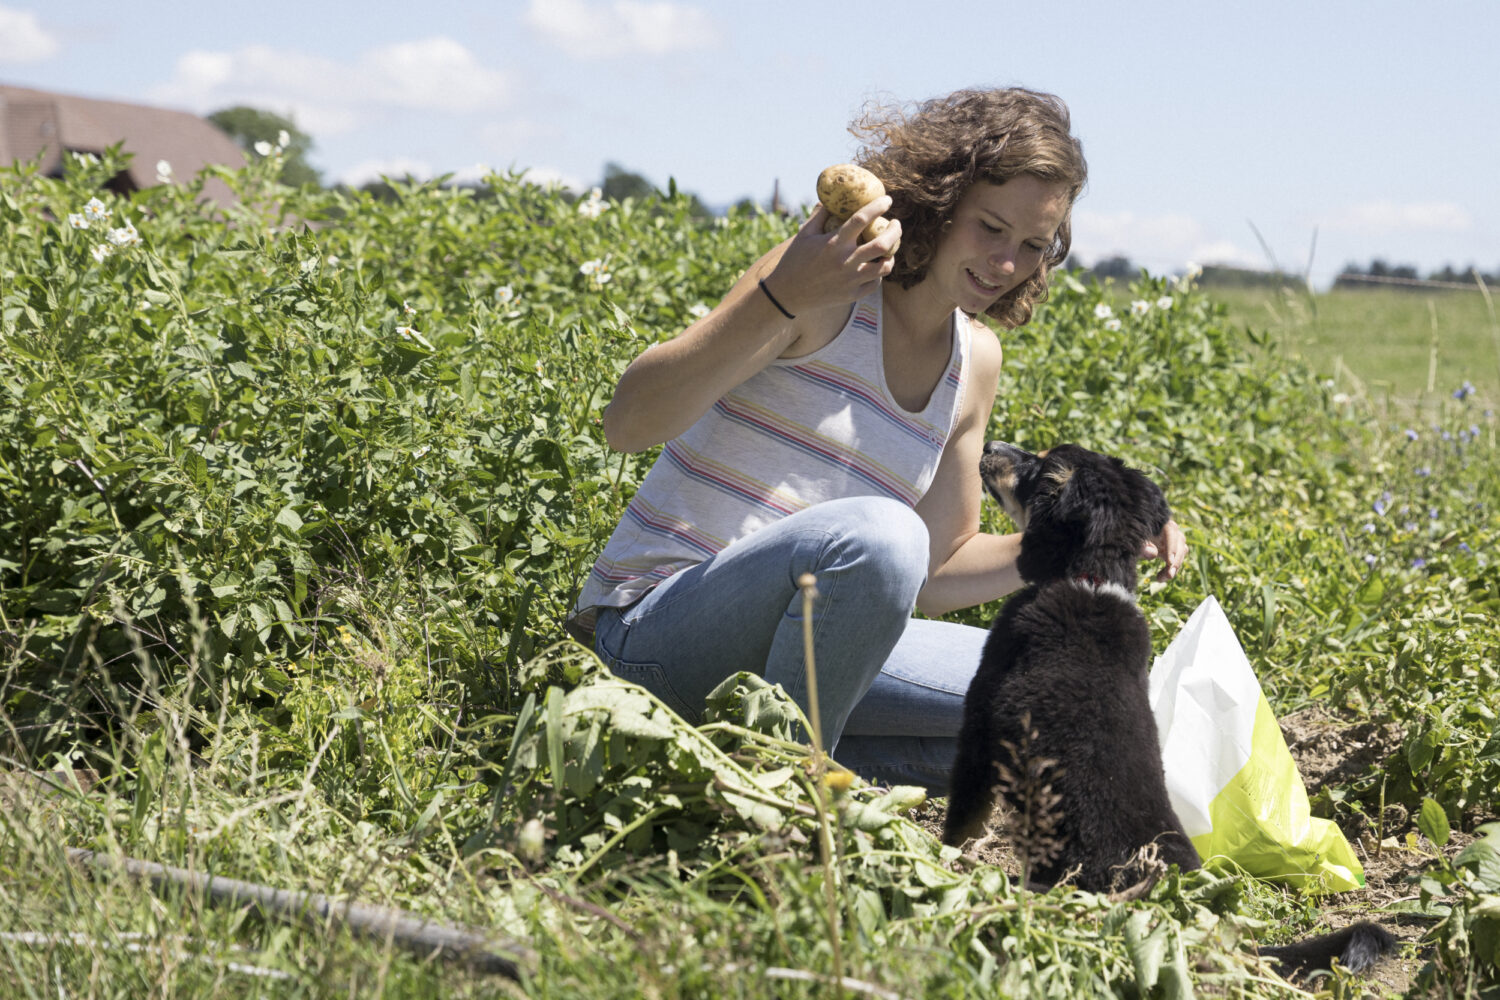 13Photo-Daniel Rihs-Frauen in der Landwirtschaft